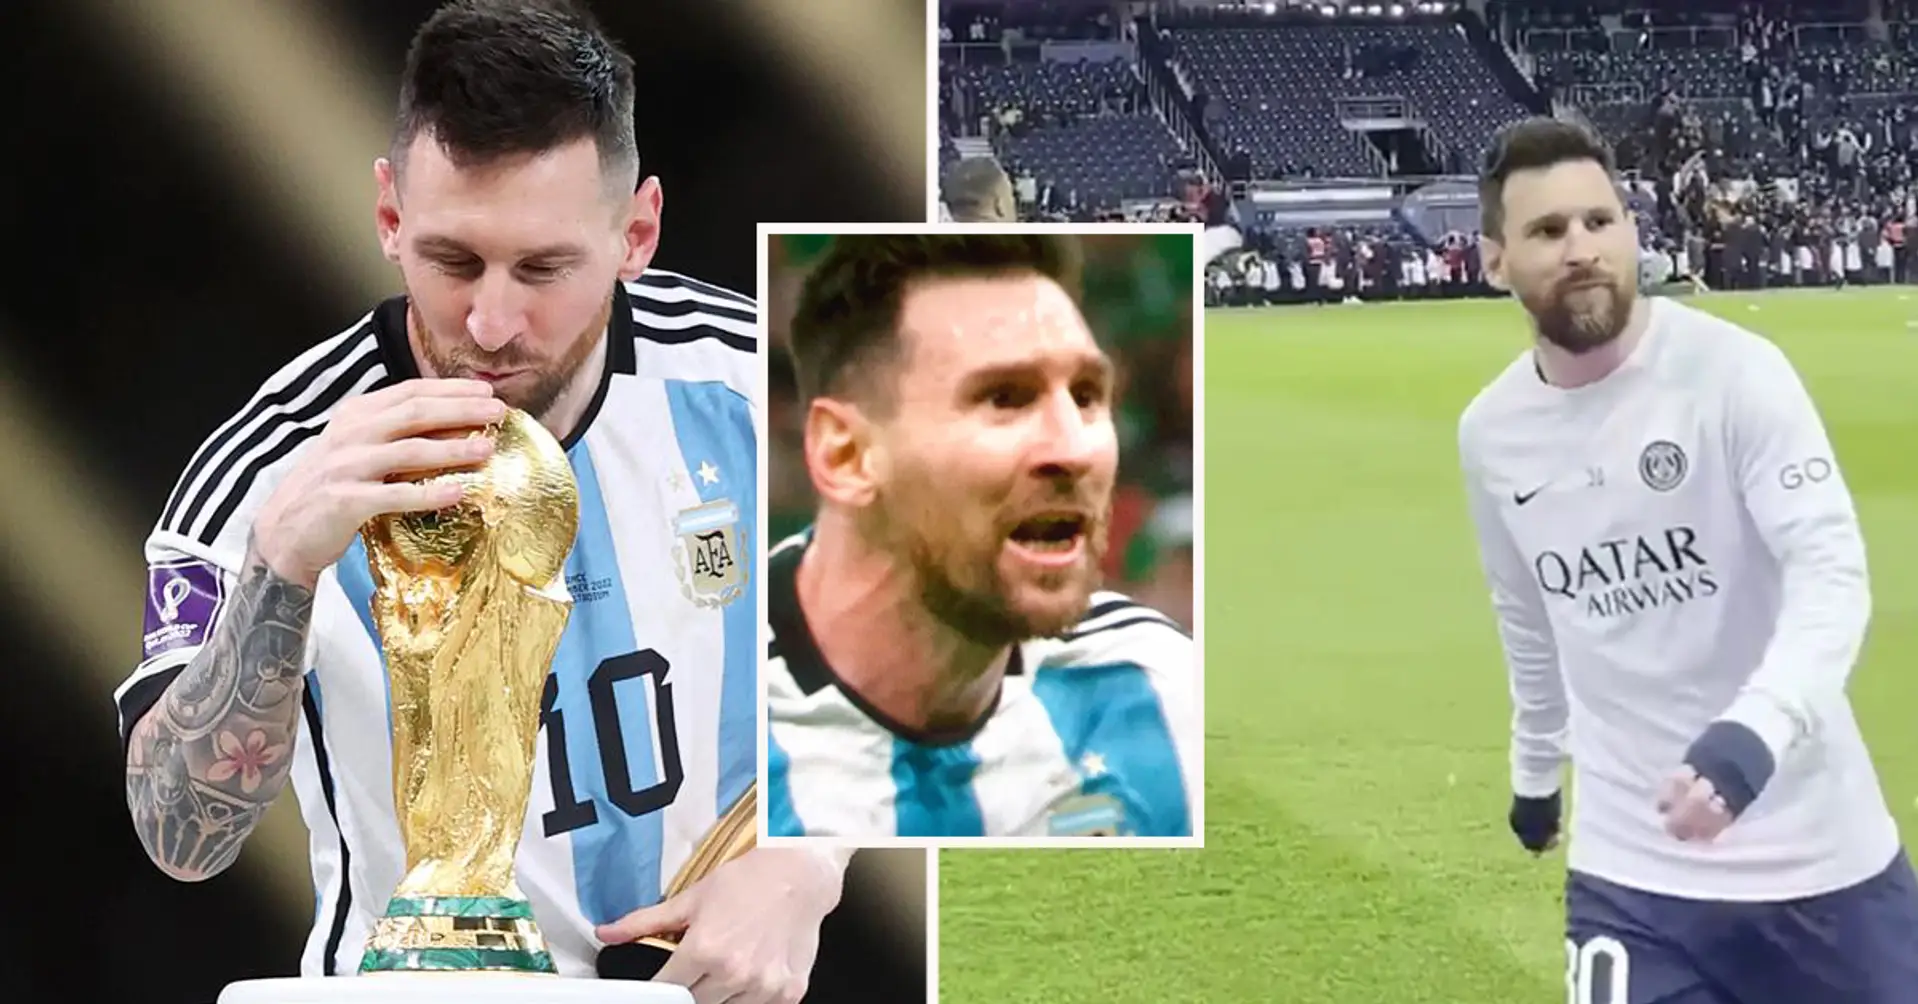 Konnte nicht widerstehen: Messis Reaktion wurde auf der Kamera festgehalten, als ein Fan ihm "Du bist Weltmeister" zurief